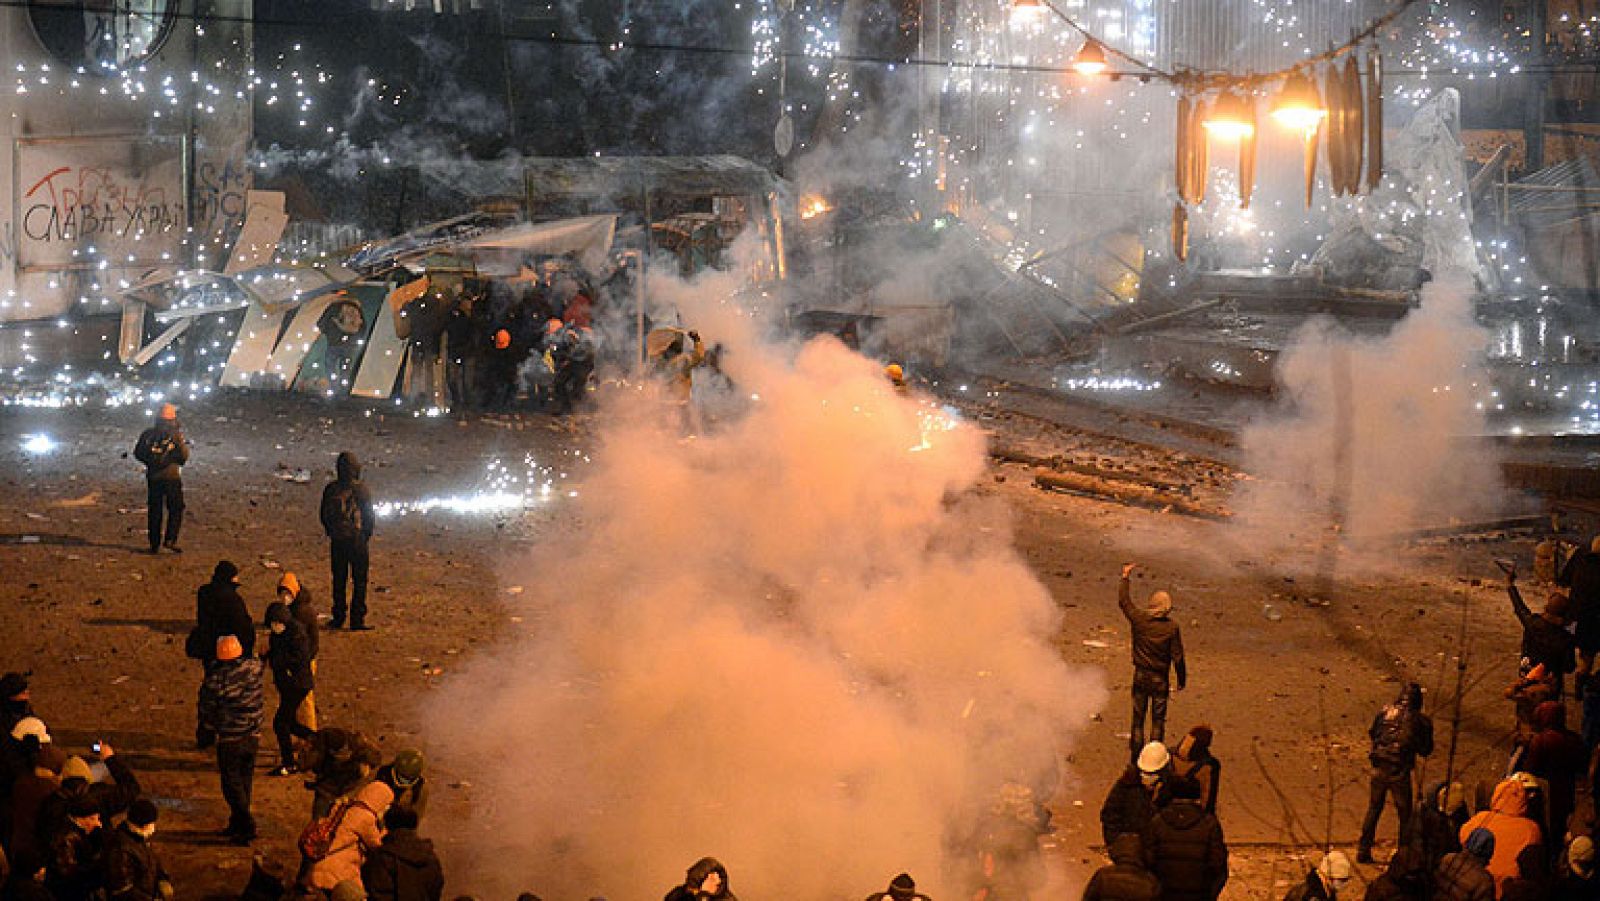 Segundo día de enfrentamientos con la policía. Esta vez, a raiz de la aprobación de nuevas leyes contra el derecho de manifestación y que pretende desactivar las protestas. Una catapulta es lo último que han utilizado los manifestantes proeuropeos, opuestos al presidente Yanukóvich, contra los antidisturbios en Kiev. Es una de las señales más visibles de la radicalización de las protestas en Ucrania. Los más violentos llevan 24 horas atrincherados en esta plaza de la capital cercana al Parlamento y a la sede del Gobierno.